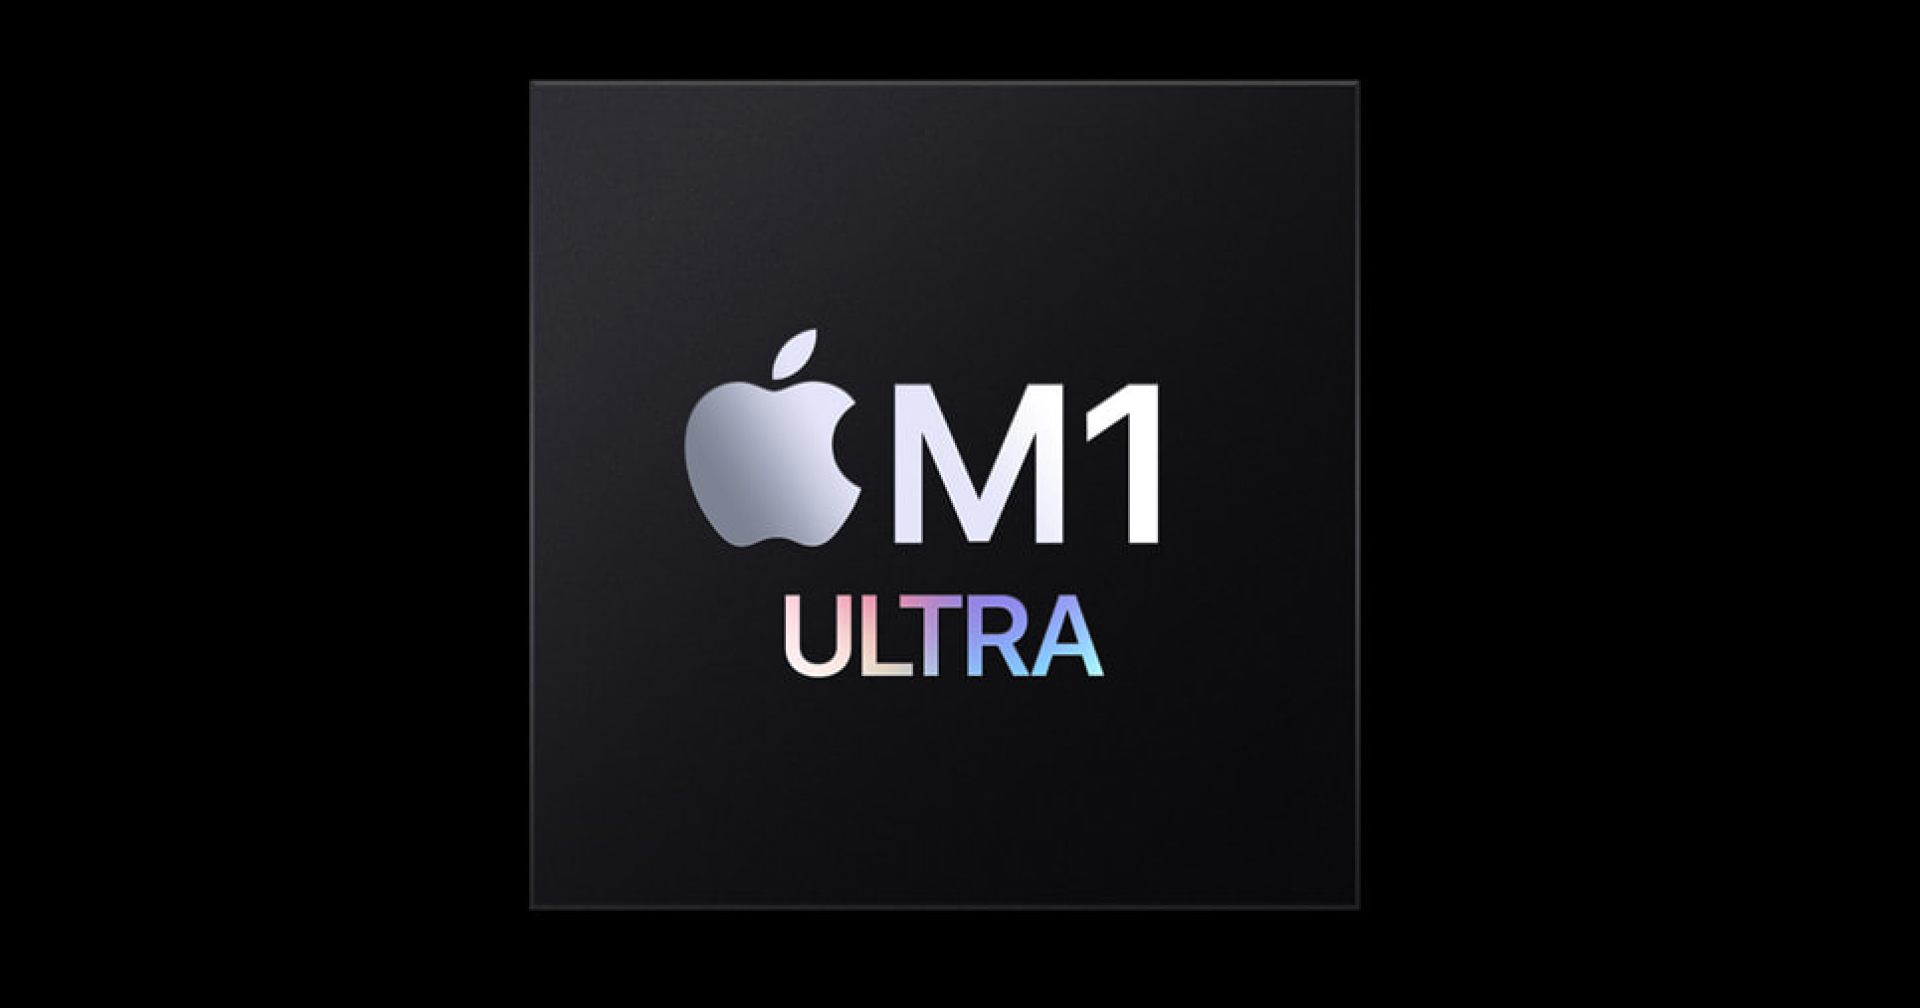 เปิดตัว Apple M1 Ultra ชิปรุ่นโหด เหมือนโกรธใครมา สำหรับลุยงานโหด!